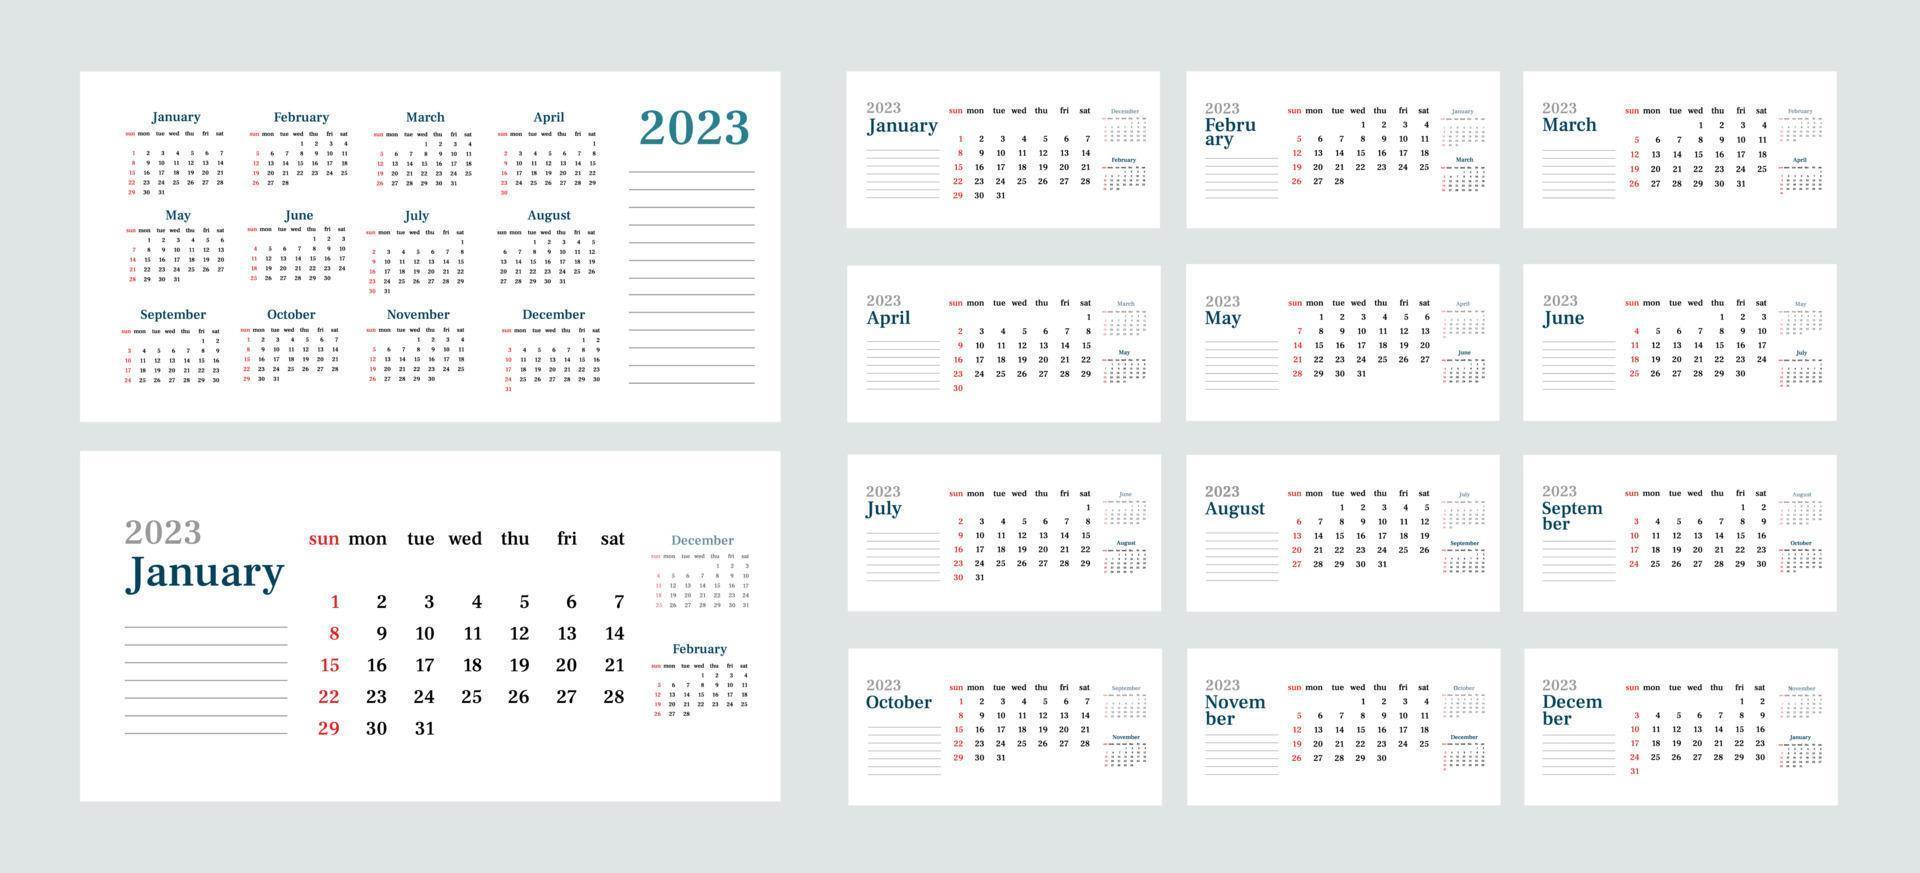 calendario horizontal de escritorio simple 2023. et de 12 meses, portada y una hoja del año. inicio de semana el domingo. plantilla minimalista vectorial vector